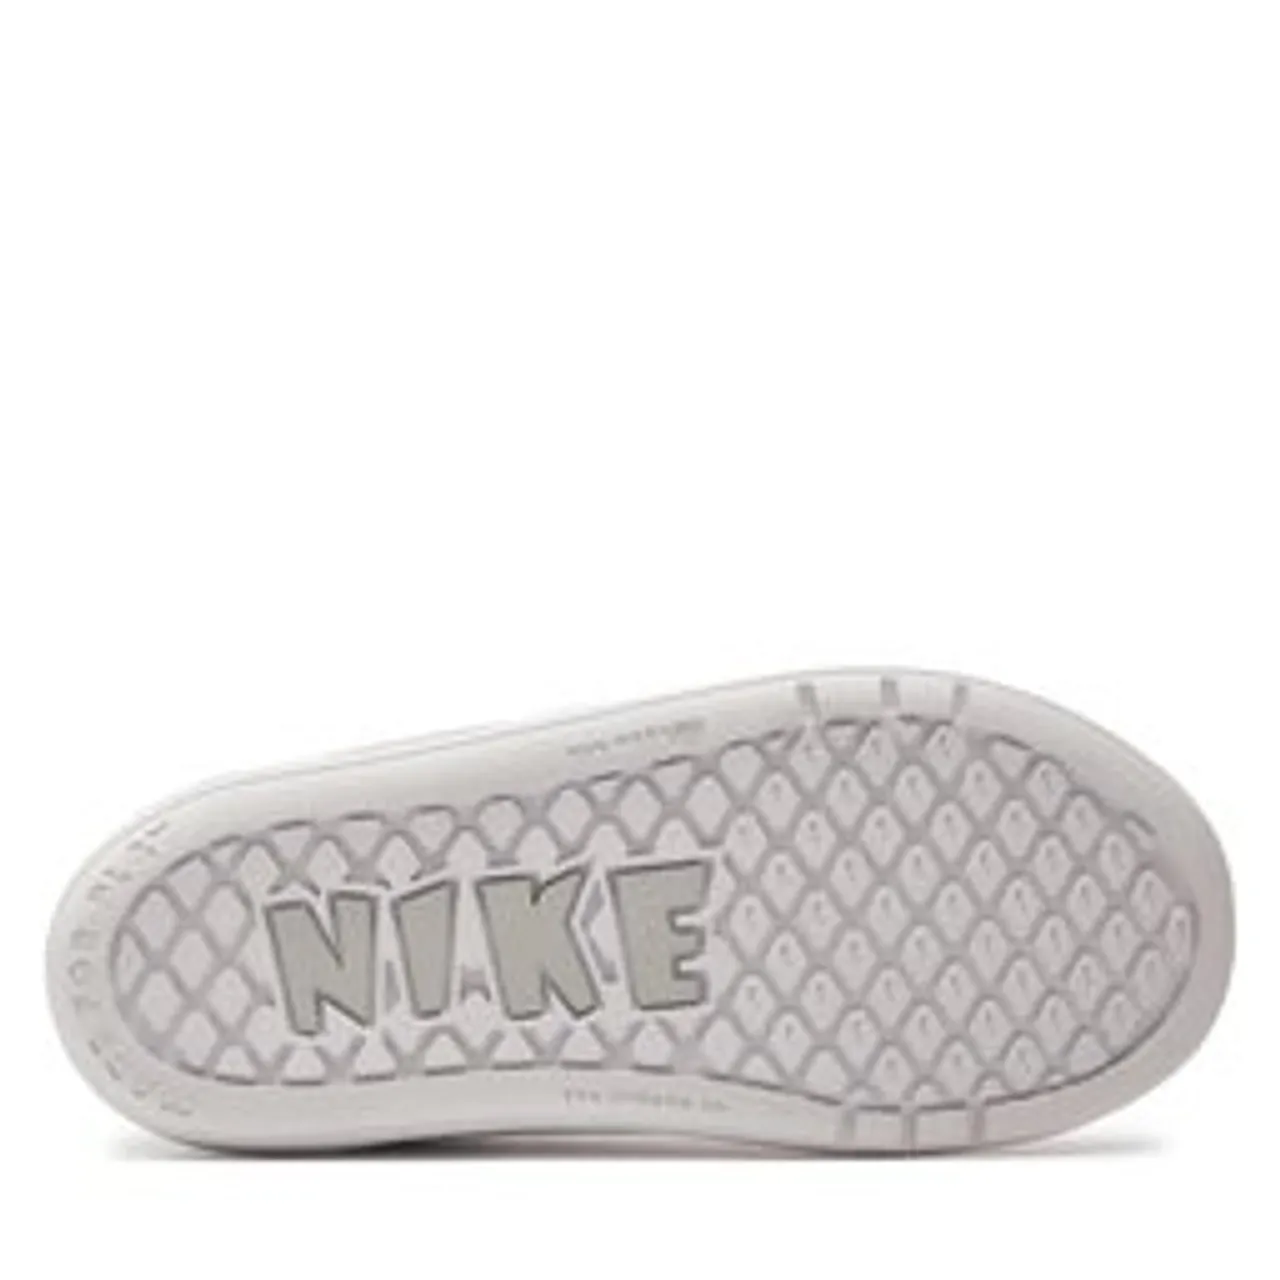 Sneakers Nike Pico 5 (TDV) AR4162 100 Weiß